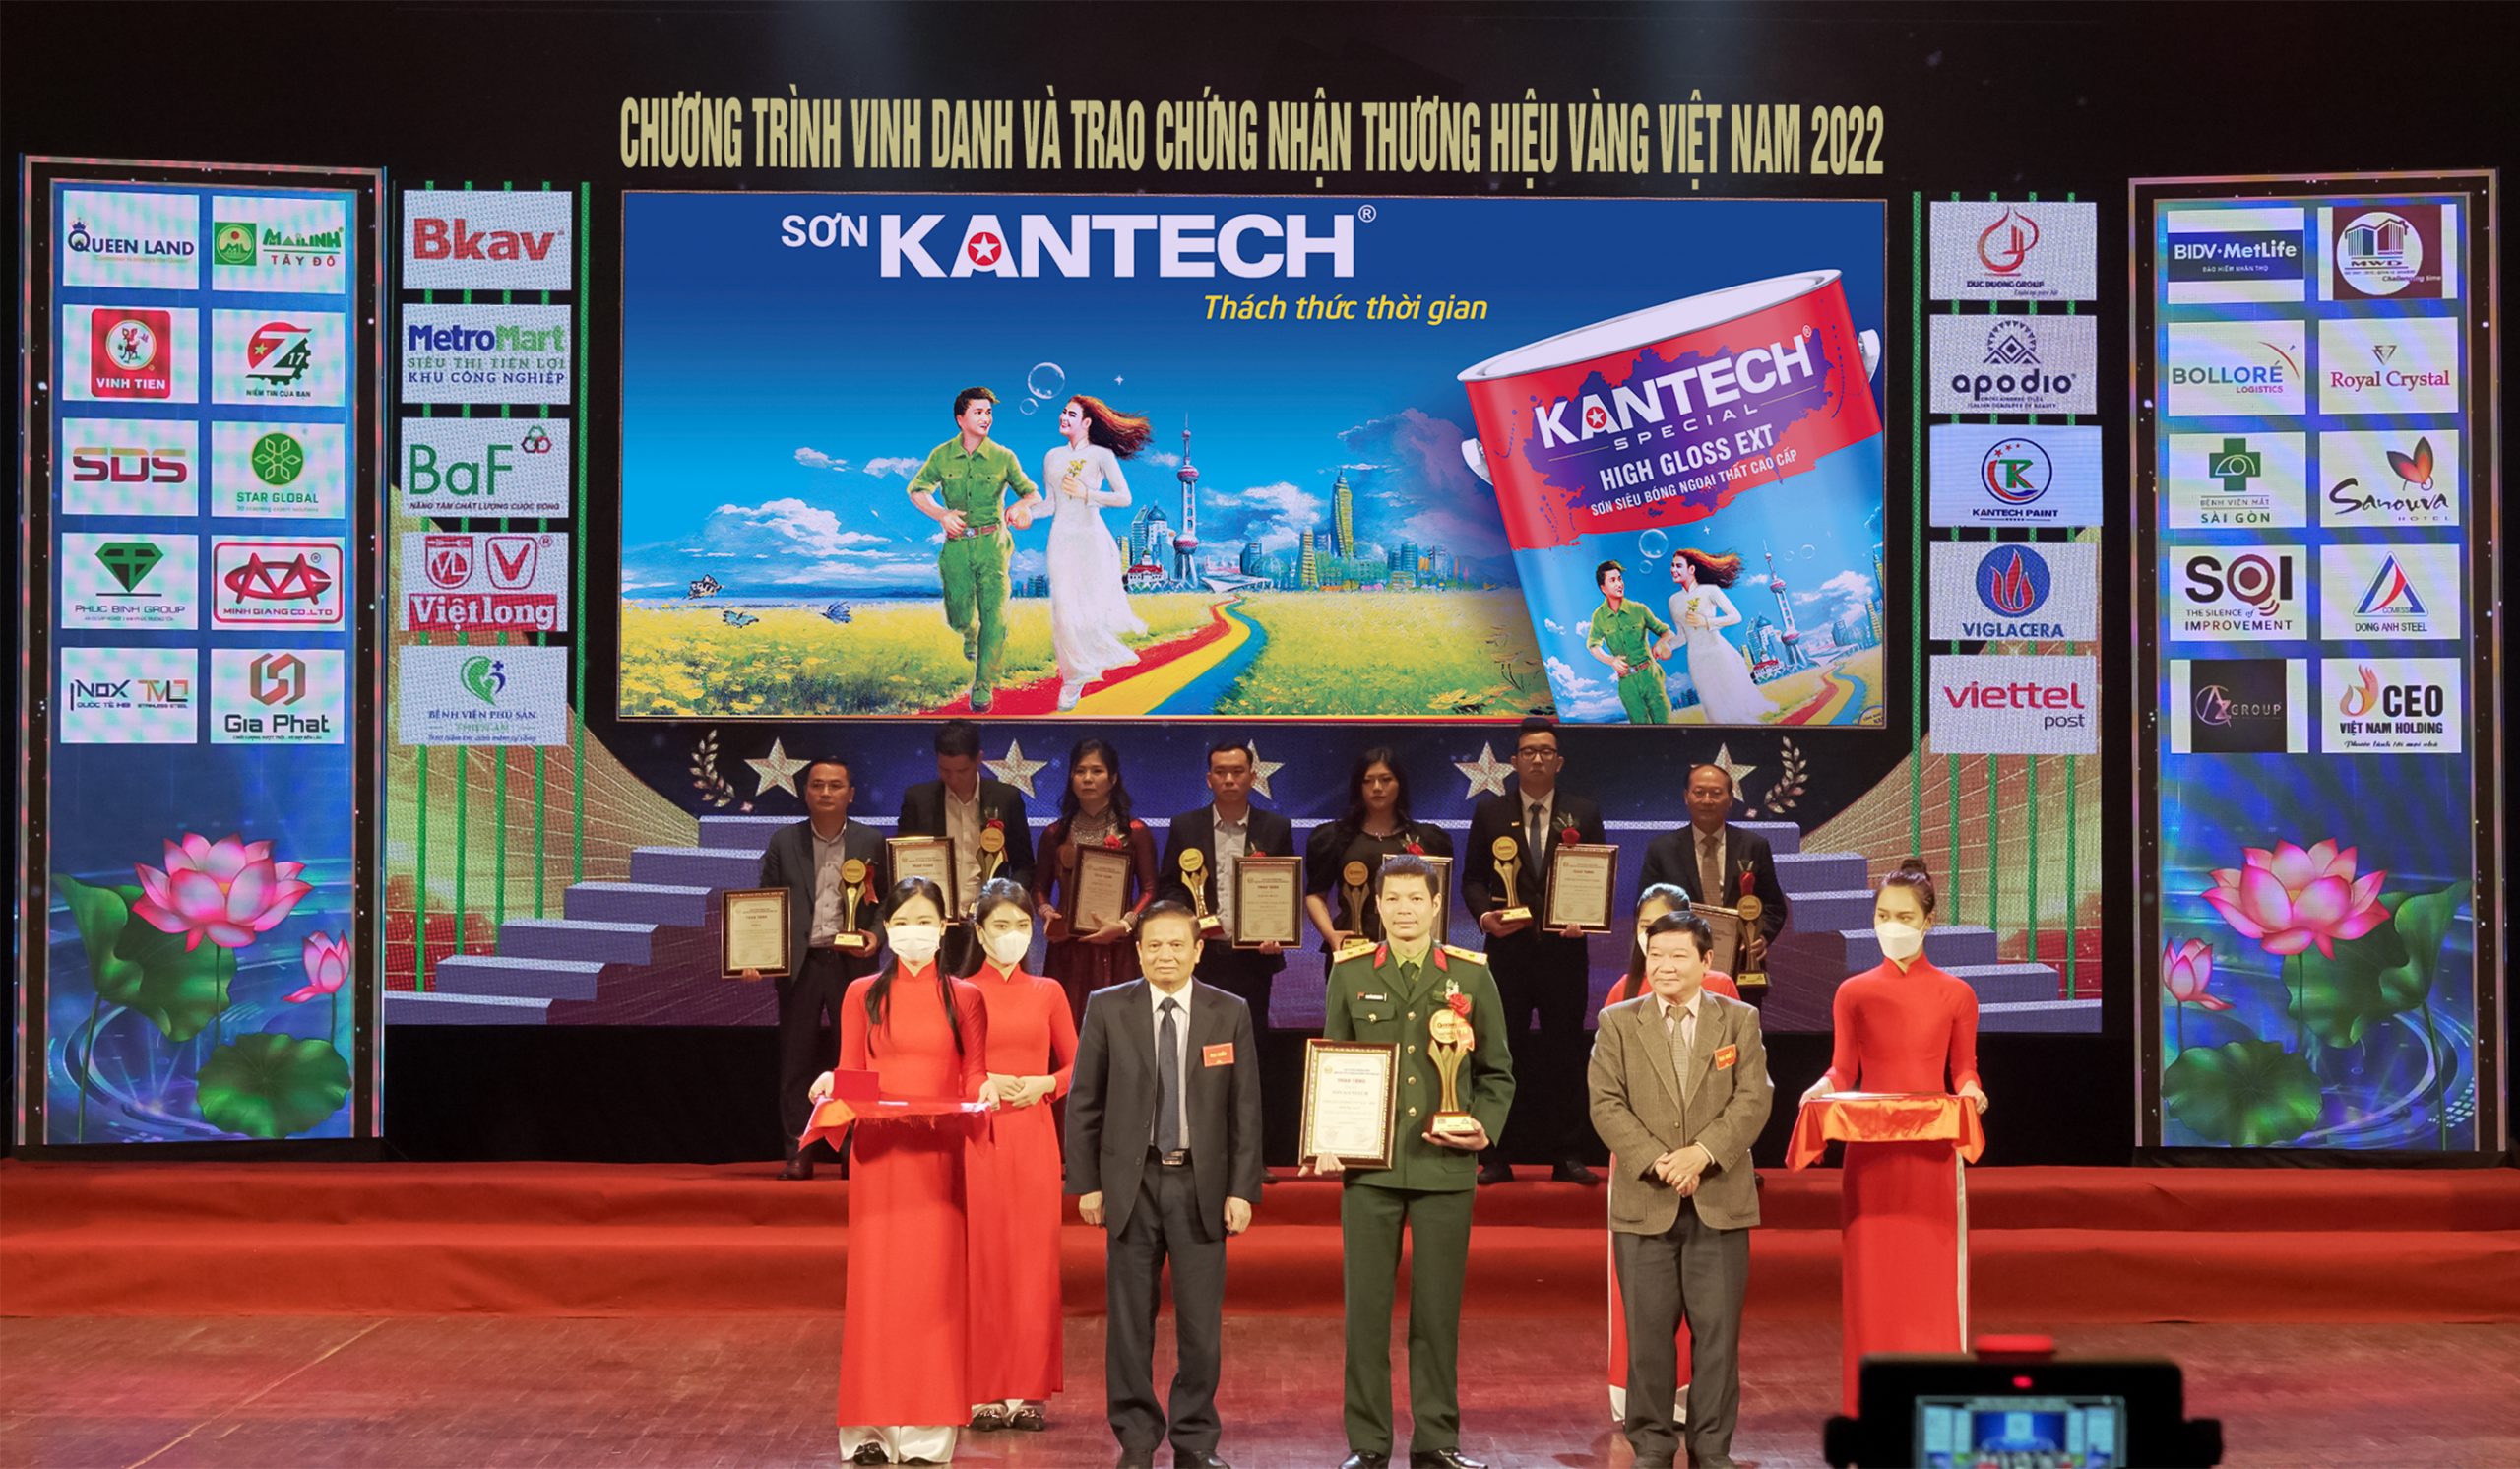 SSơn kantech được trao chứng nhận thương hiệu vàng VIỆT NAM năm 2022